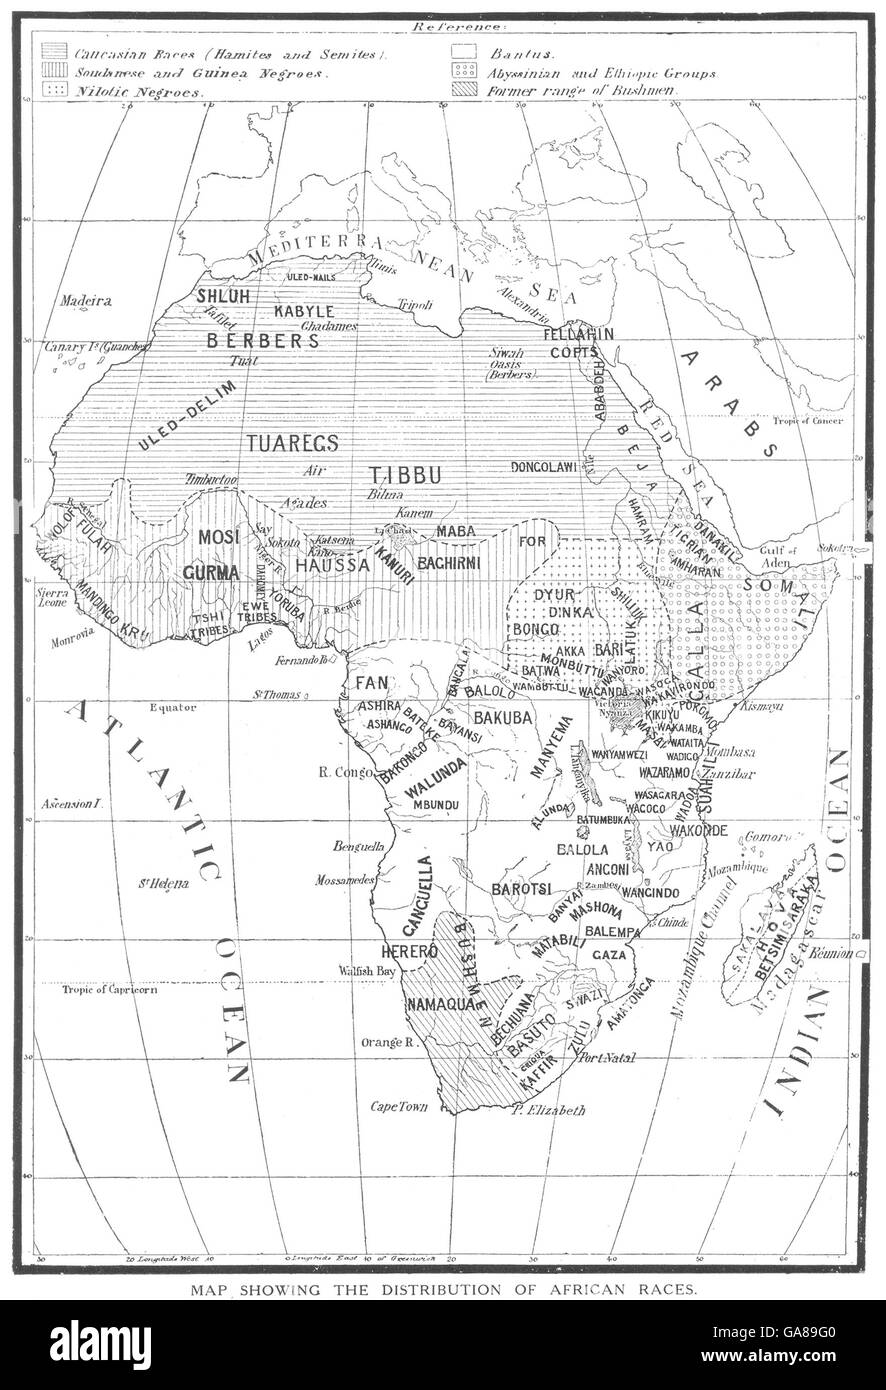 Afrika: Kartenskizze zeigt die Verteilung der afrikanischen Völker Stämme, 1900 Stockfoto